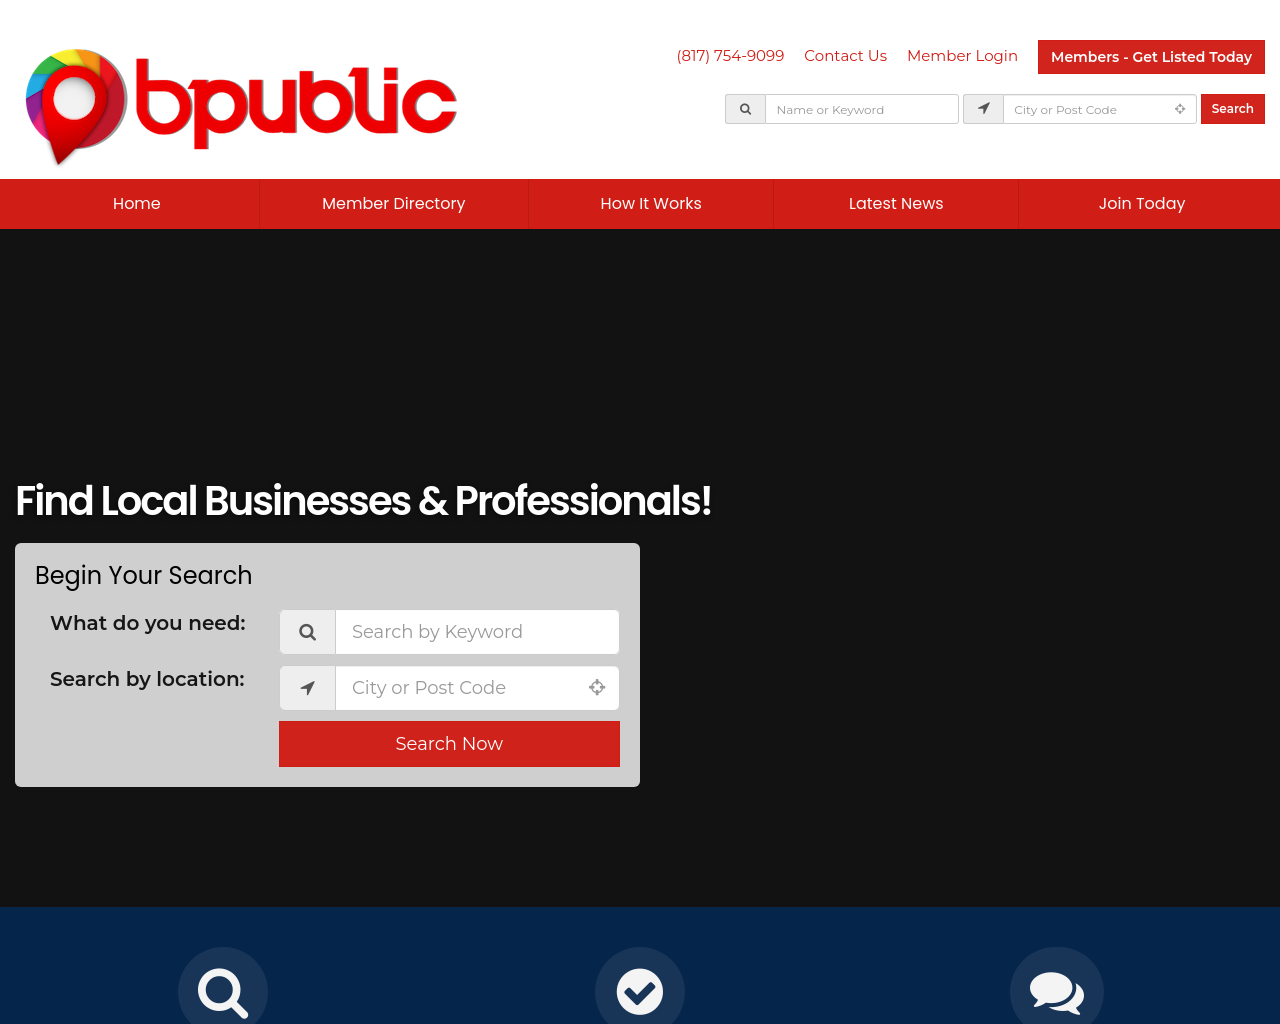 bpublic.com